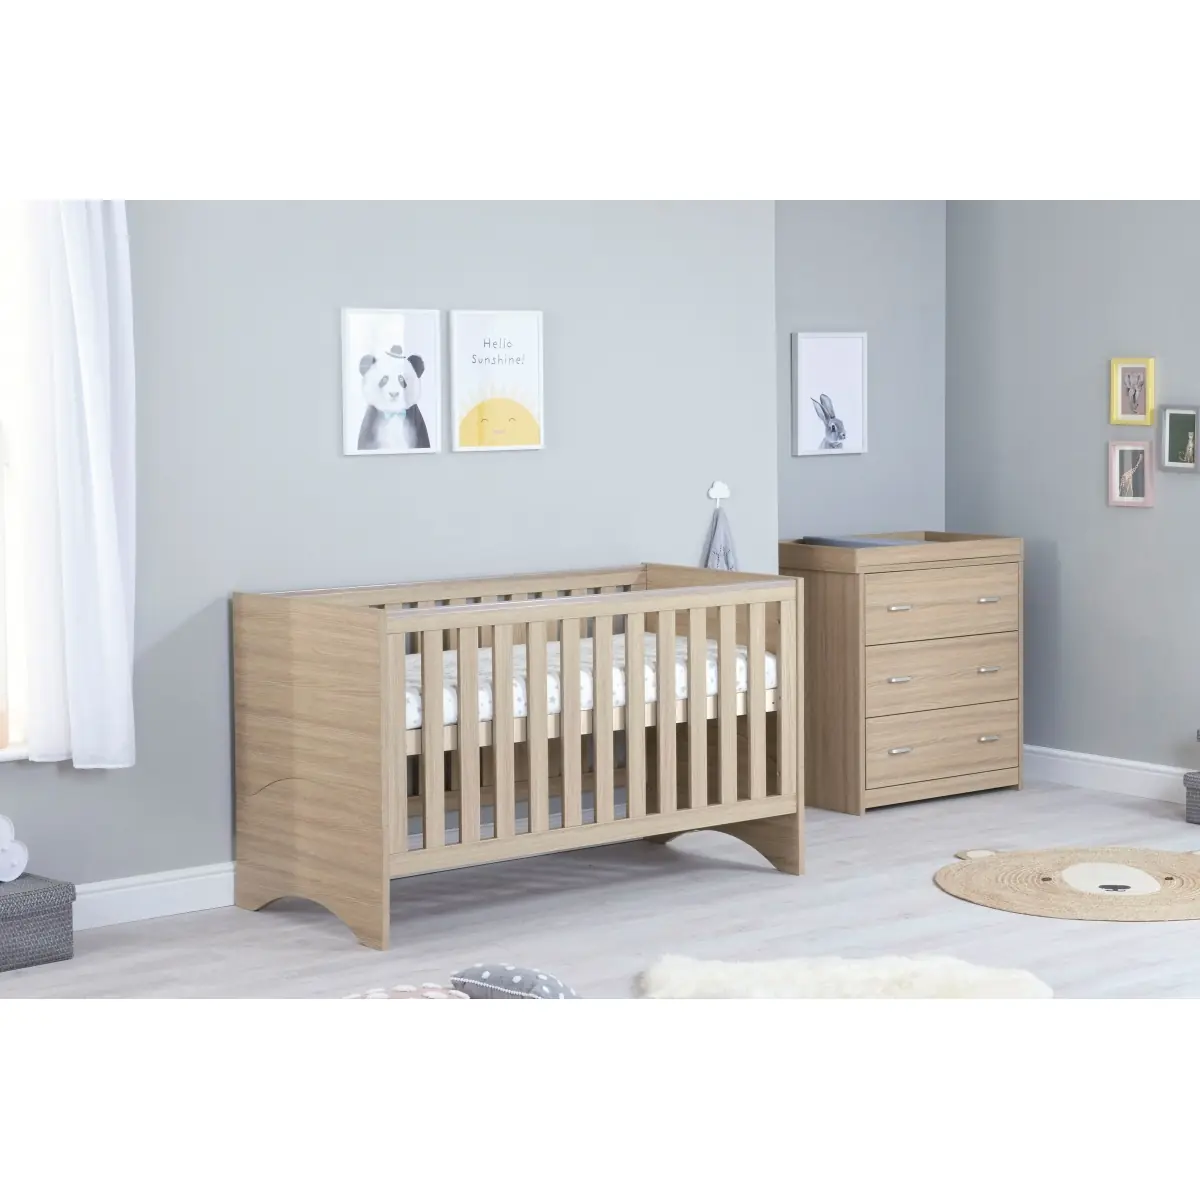 Image of Babymore Veni 2 Piece Furniture Room Set-Oak